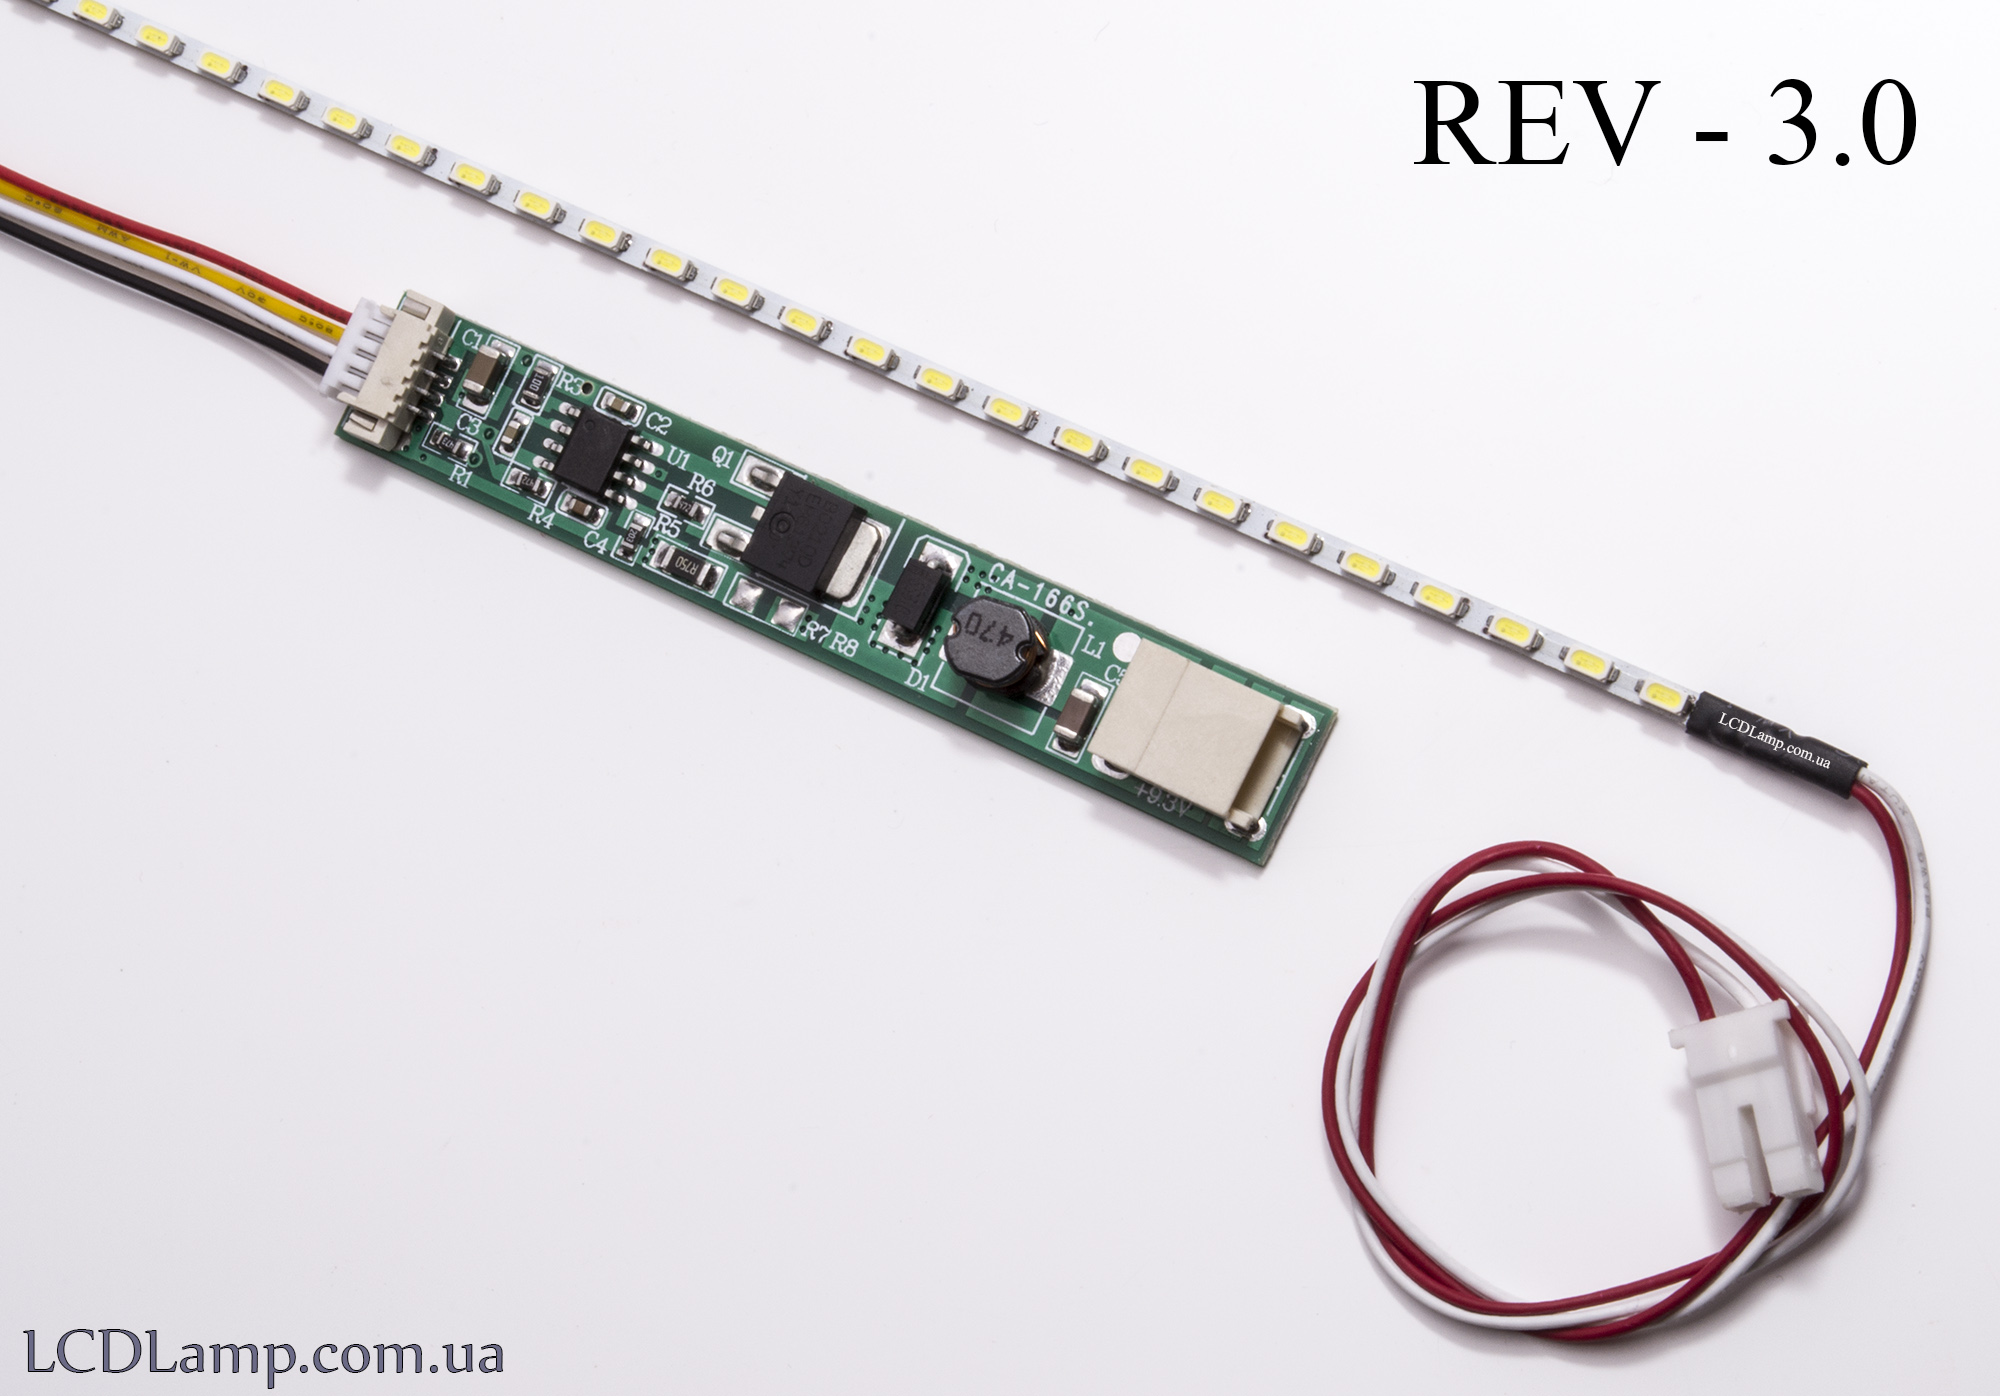 LED набор для ноутбука Rev-3.0(363мм.)